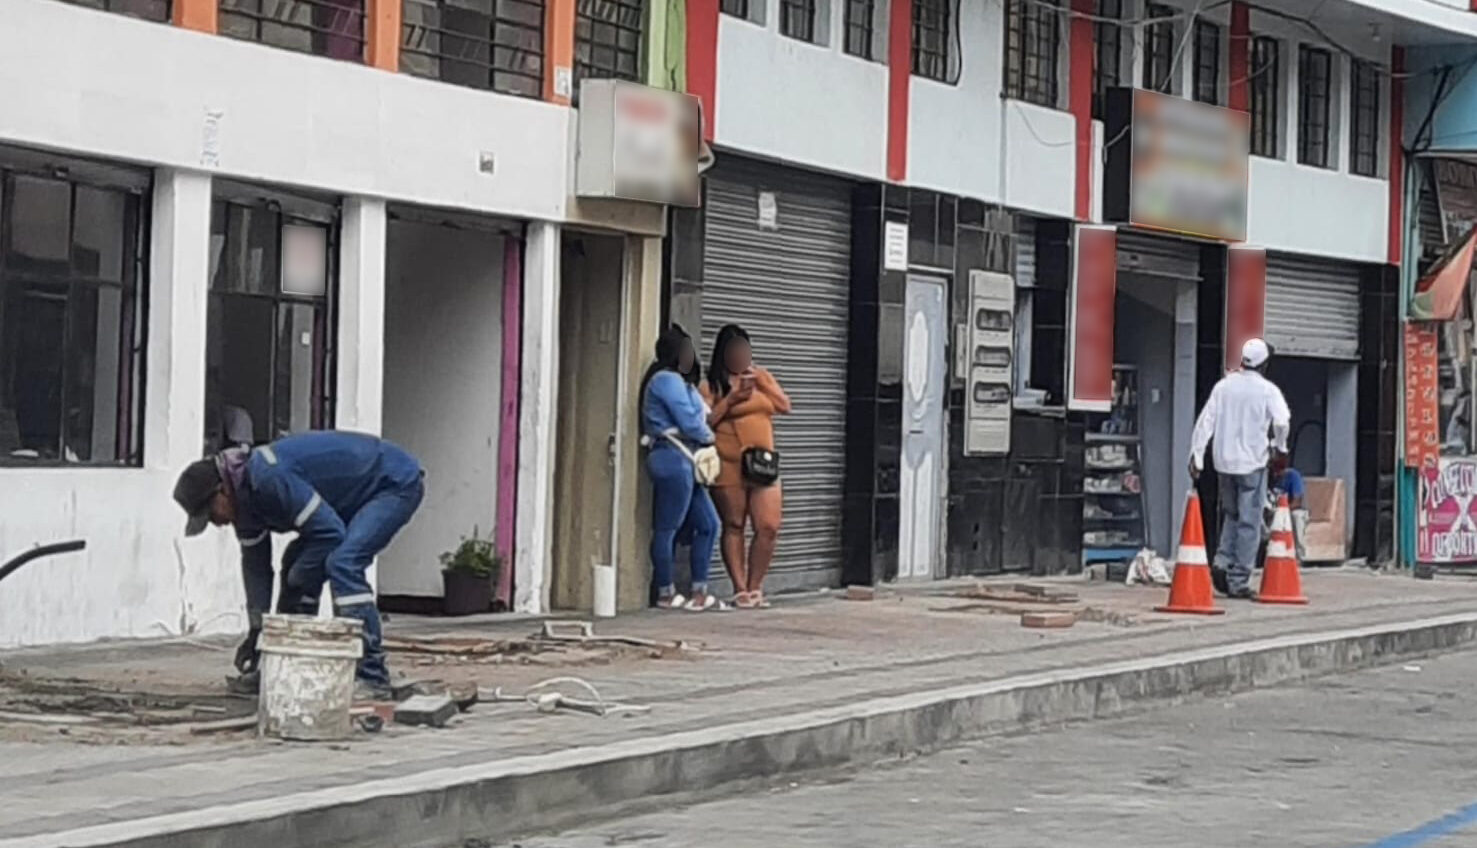 Comerciantes de la zona aseguran que cada vez hay más prostitutas en los alrededores del parque 12 de Noviembre en el centro de Ambato.